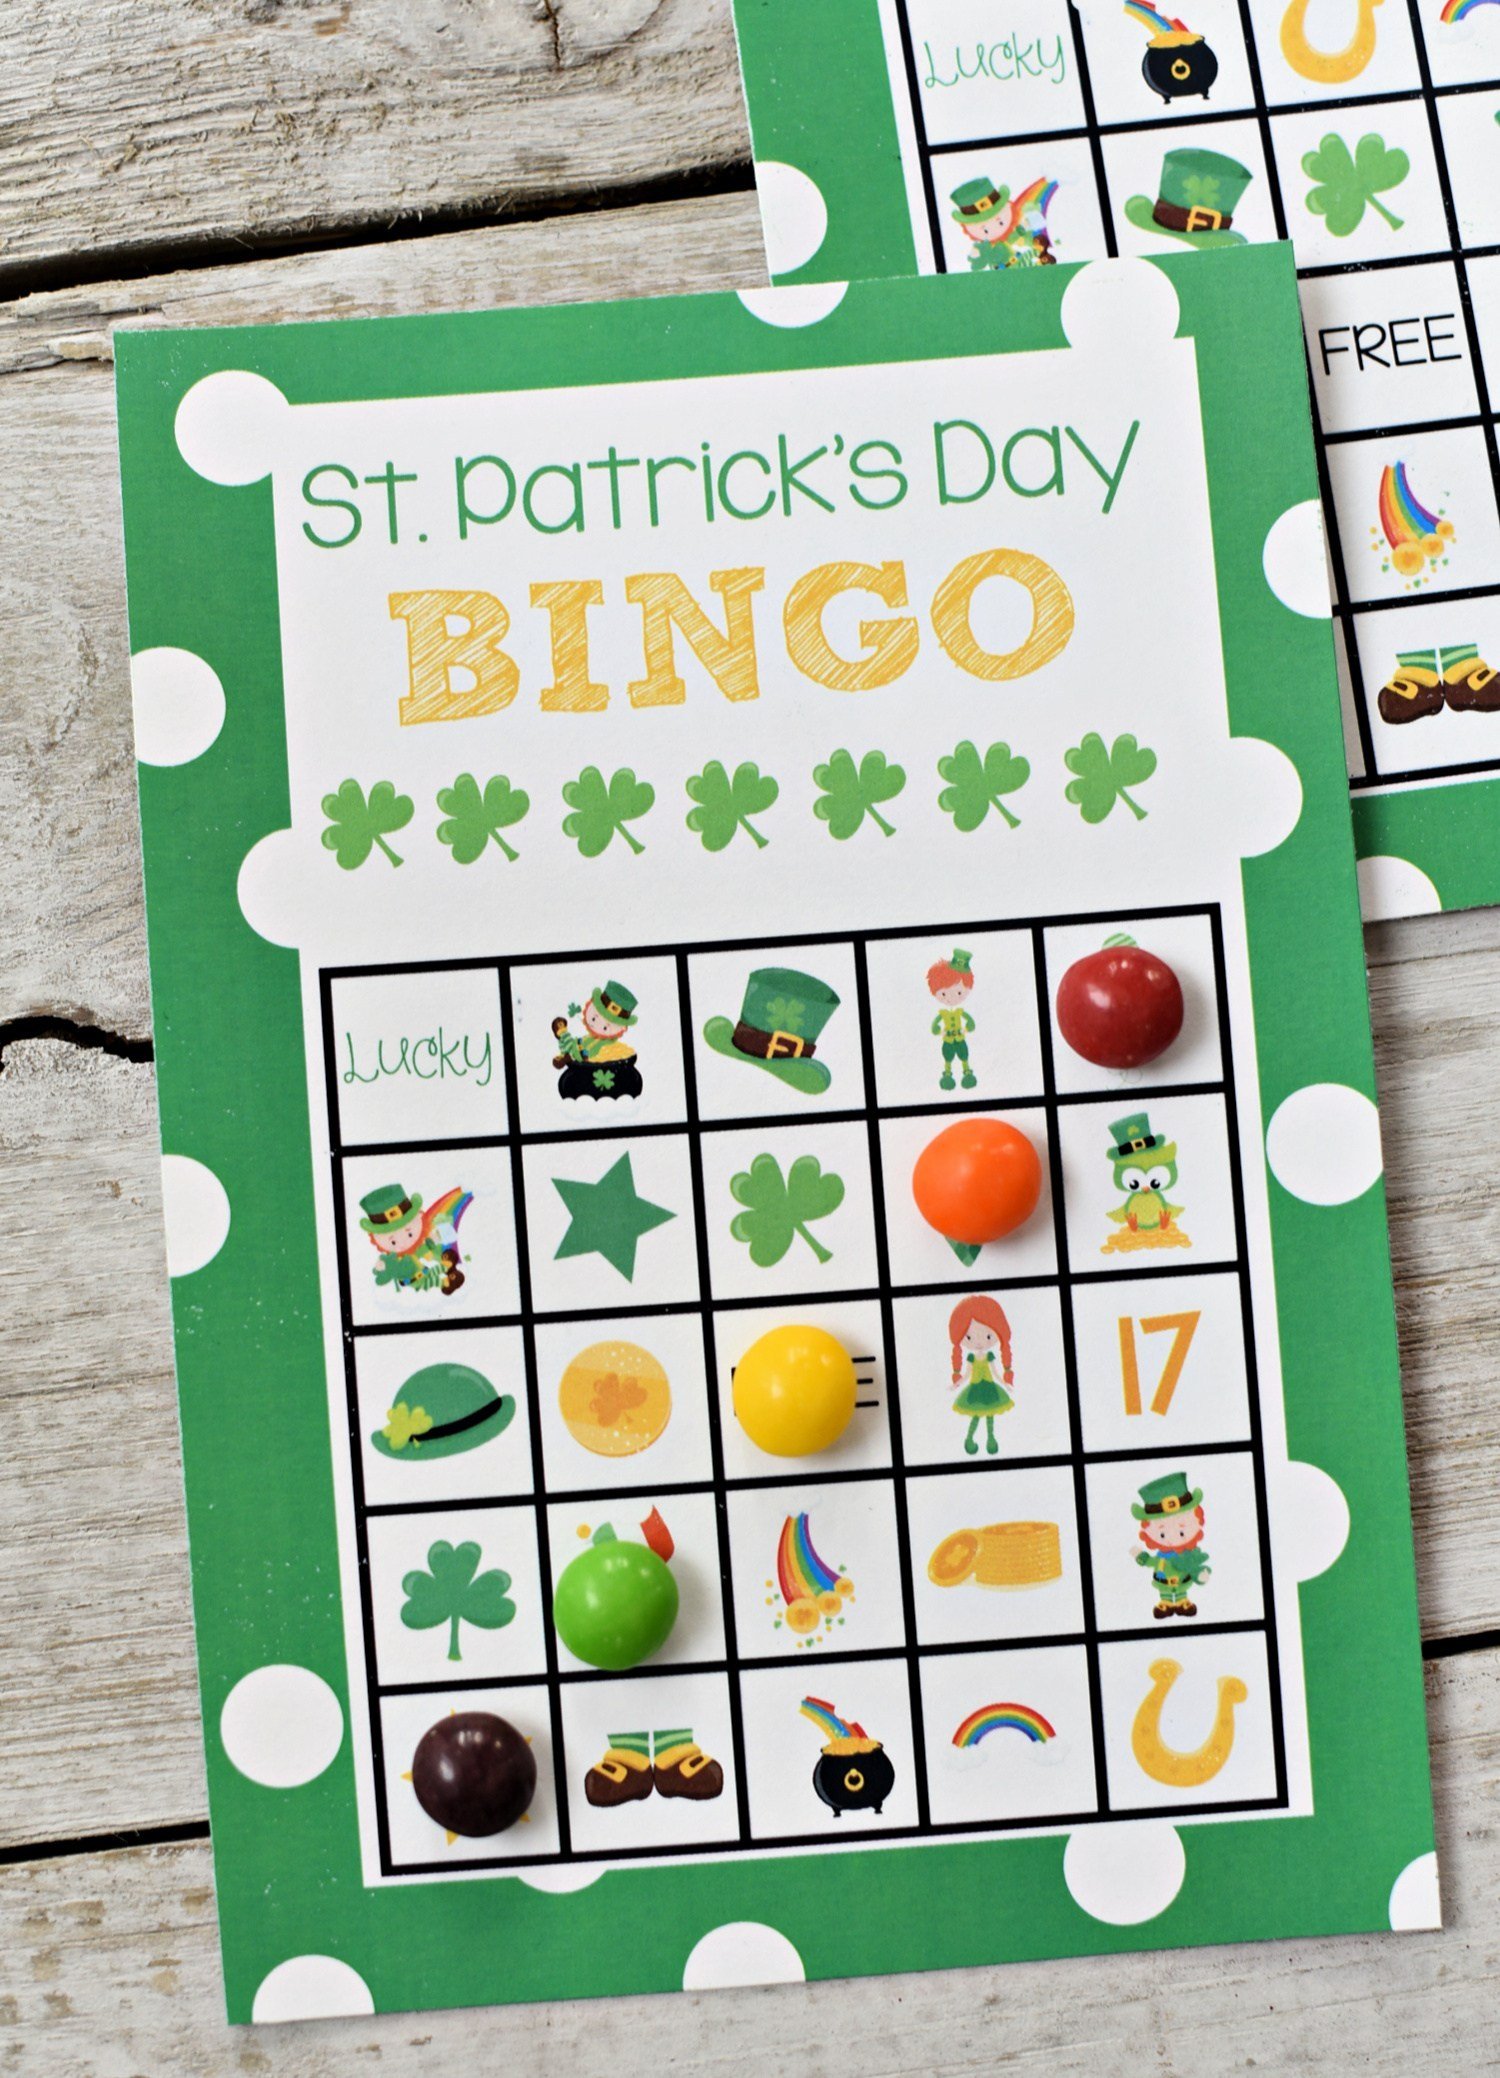 St. Patrick's Day Bingo Game